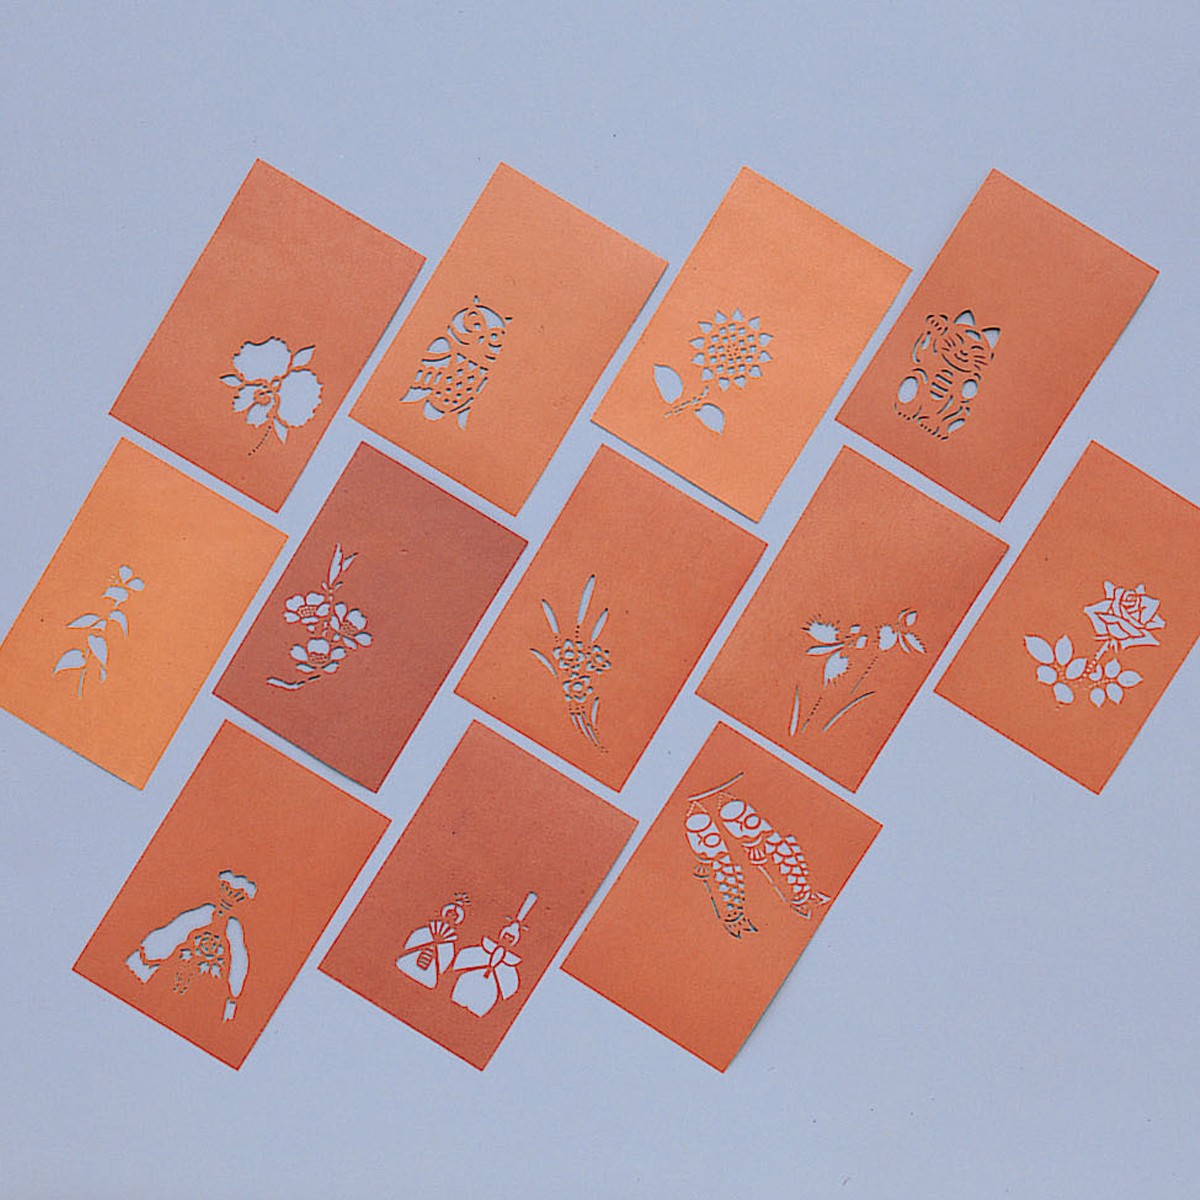 伊勢型紙 ステンシル型紙 はがき判 12種セット 渋紙 手彫り 四季の花 | 画材・ものづくりのアートロコ